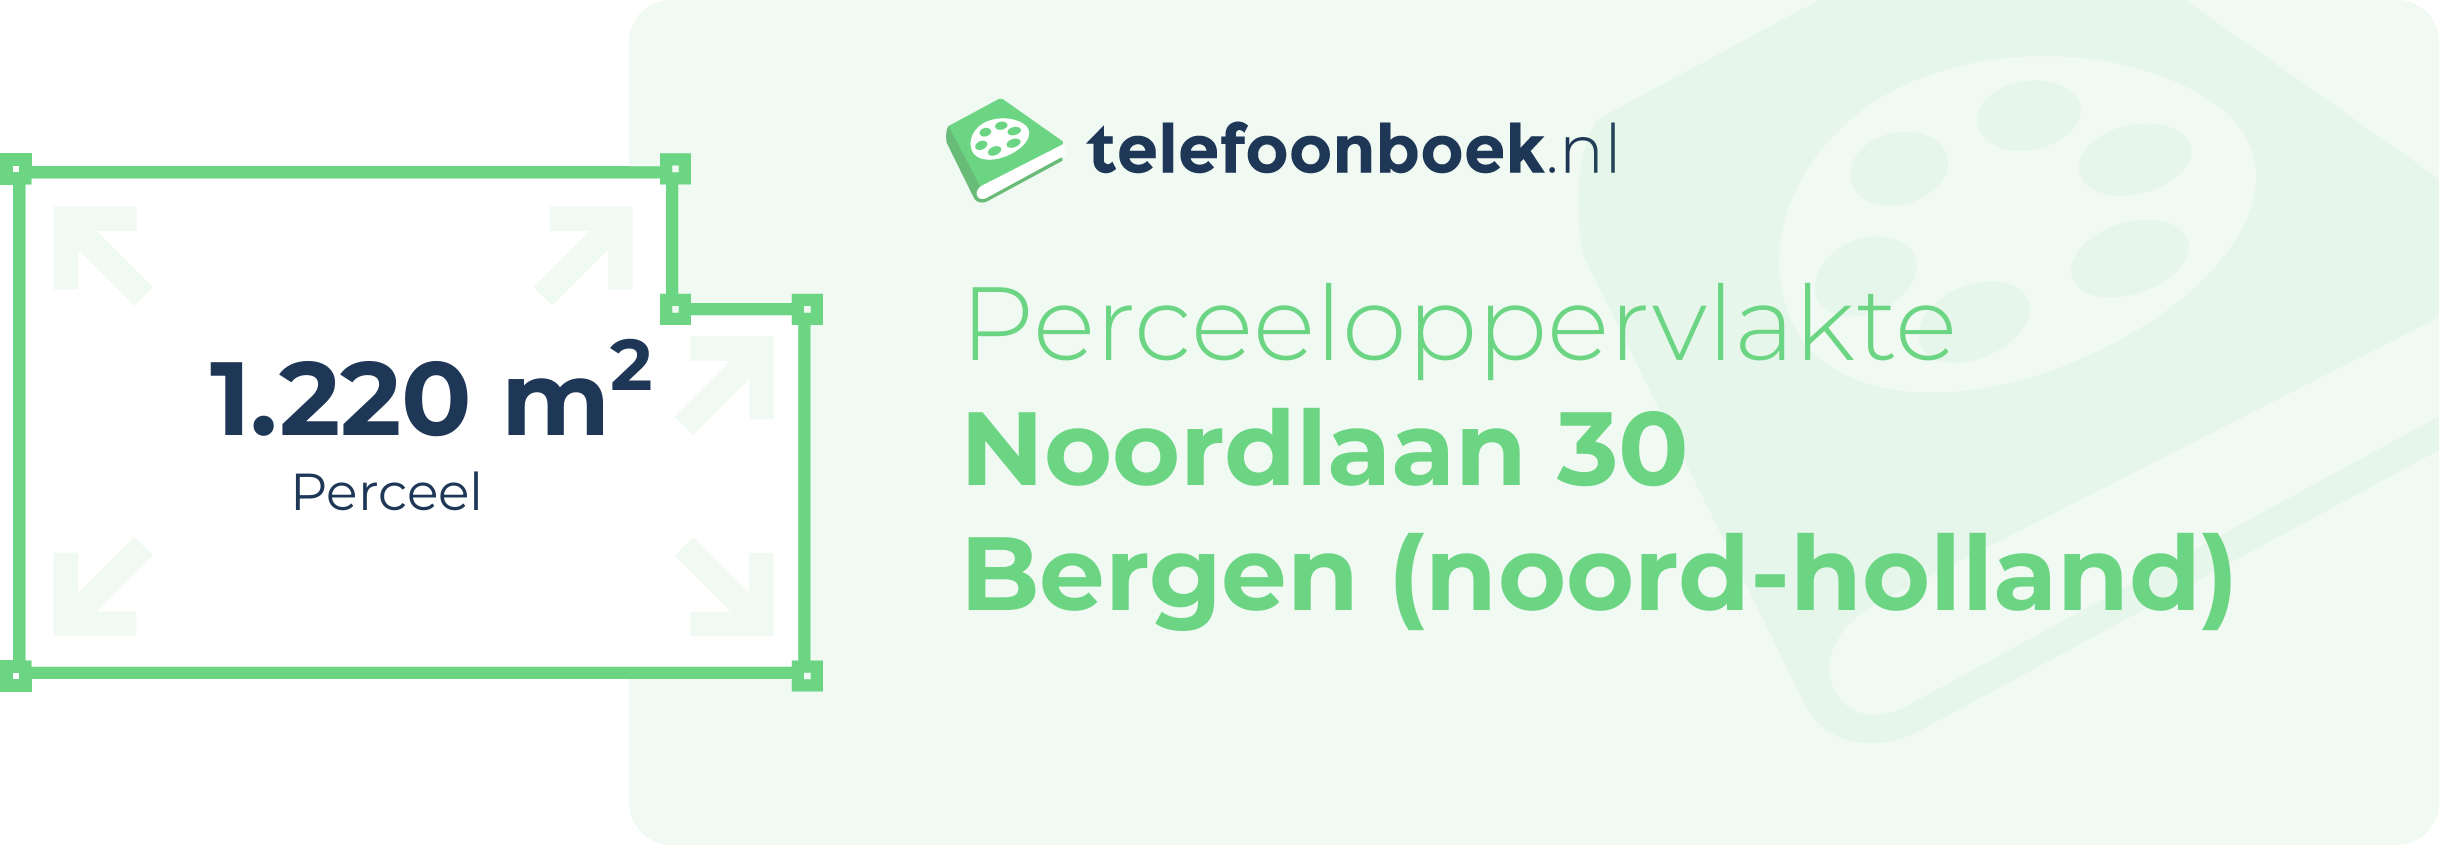 Perceeloppervlakte Noordlaan 30 Bergen (Noord-Holland)